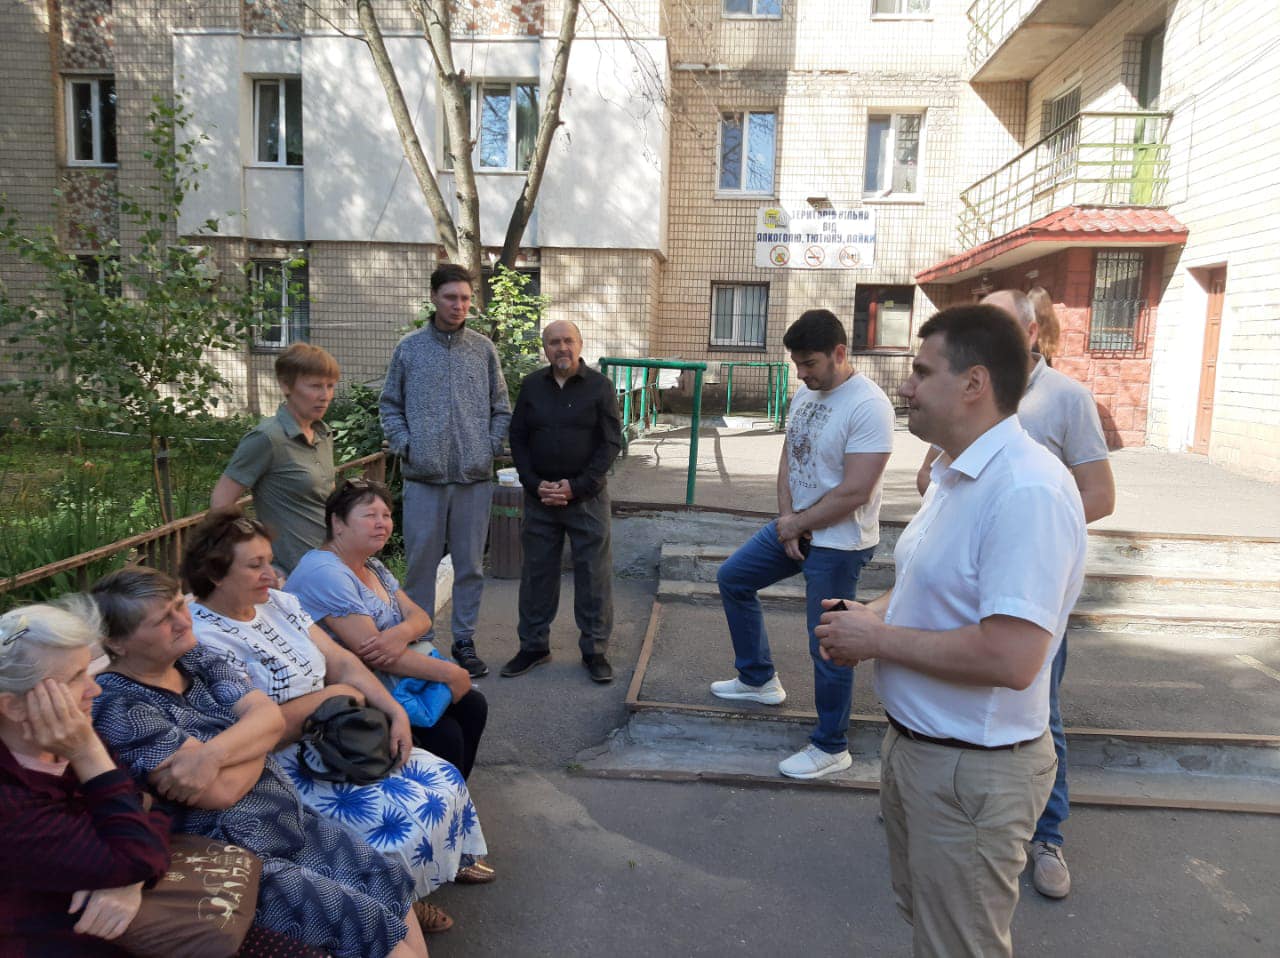 В “Інституті розвитку міст” розпочали громадське опитування щодо потенціалу міських луків у Вінниці